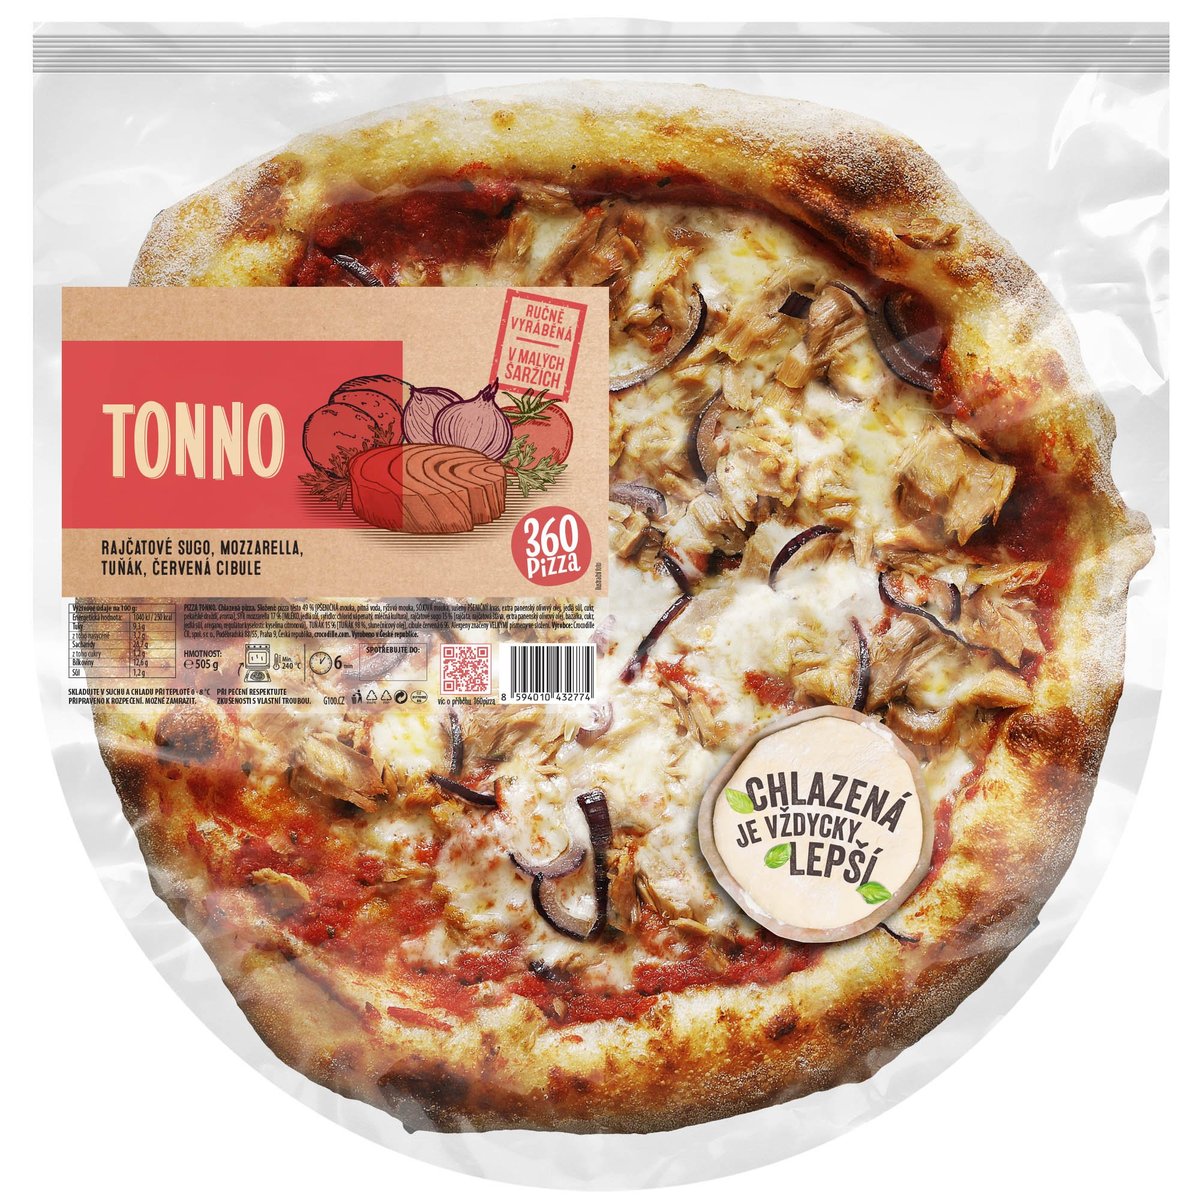 360 Pizza Tonno